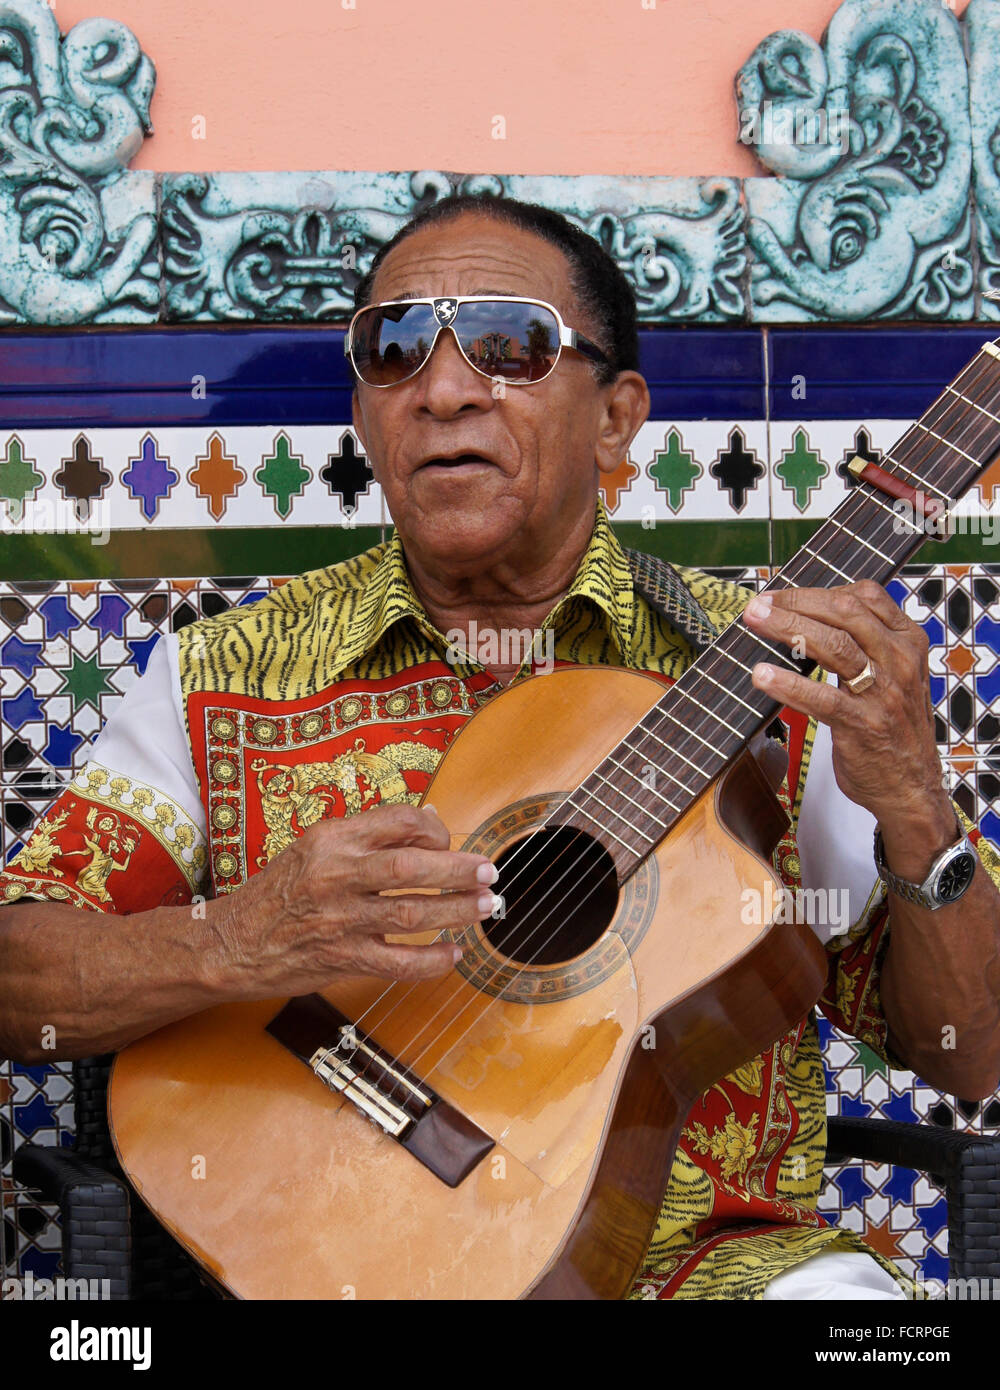 Guitar player at Ambos Mundos Hotel, Habana Vieja (Old Havana), Cuba Stock Photo